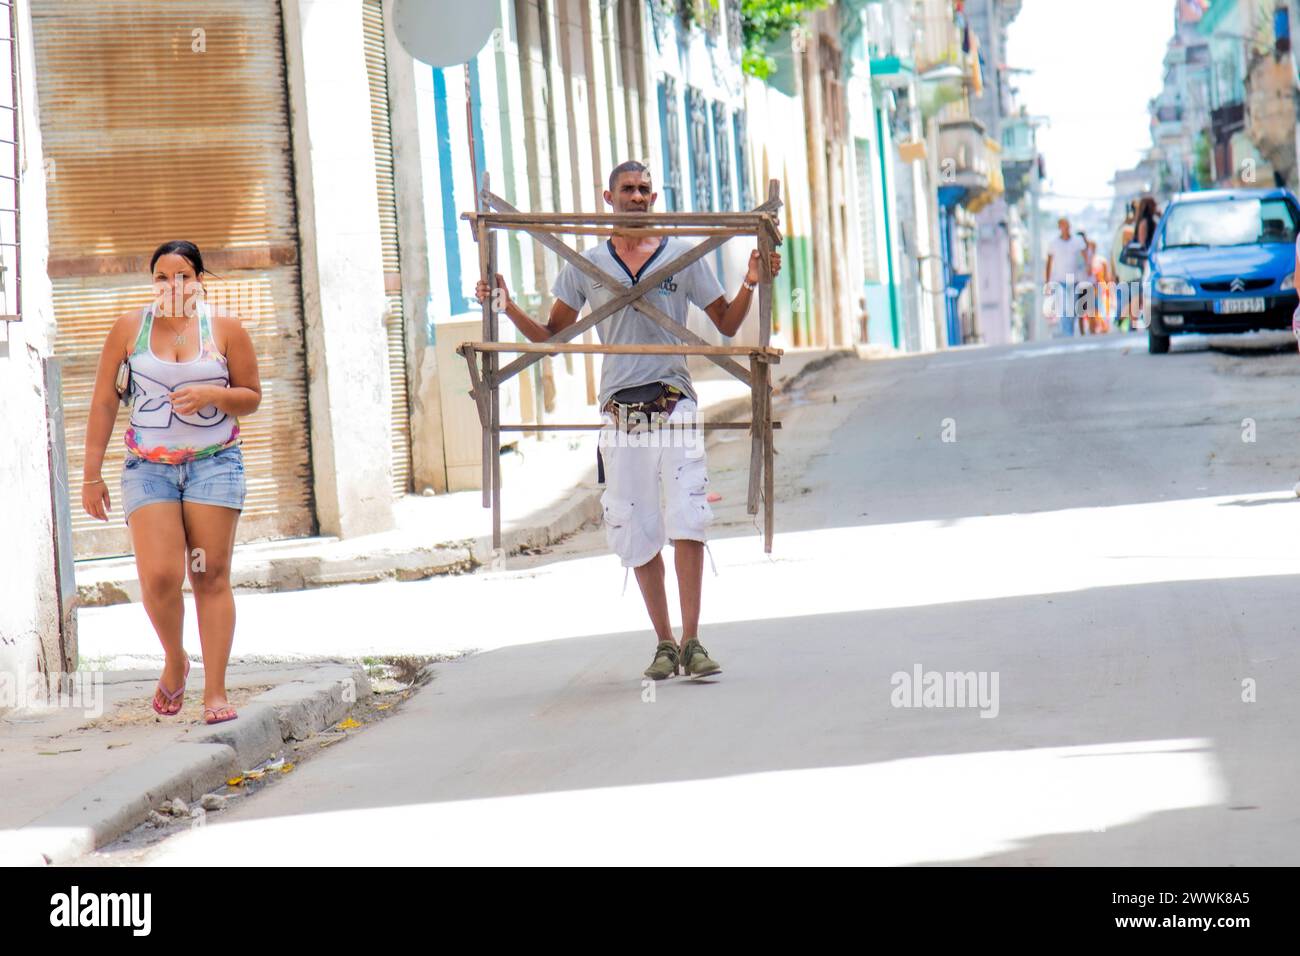 Ein kubanischer Mann trägt ein hölzernes Objekt mitten auf der Straße in Havanna, Kuba, während eine Frau auf dem Bürgersteig entlang läuft. Stockfoto